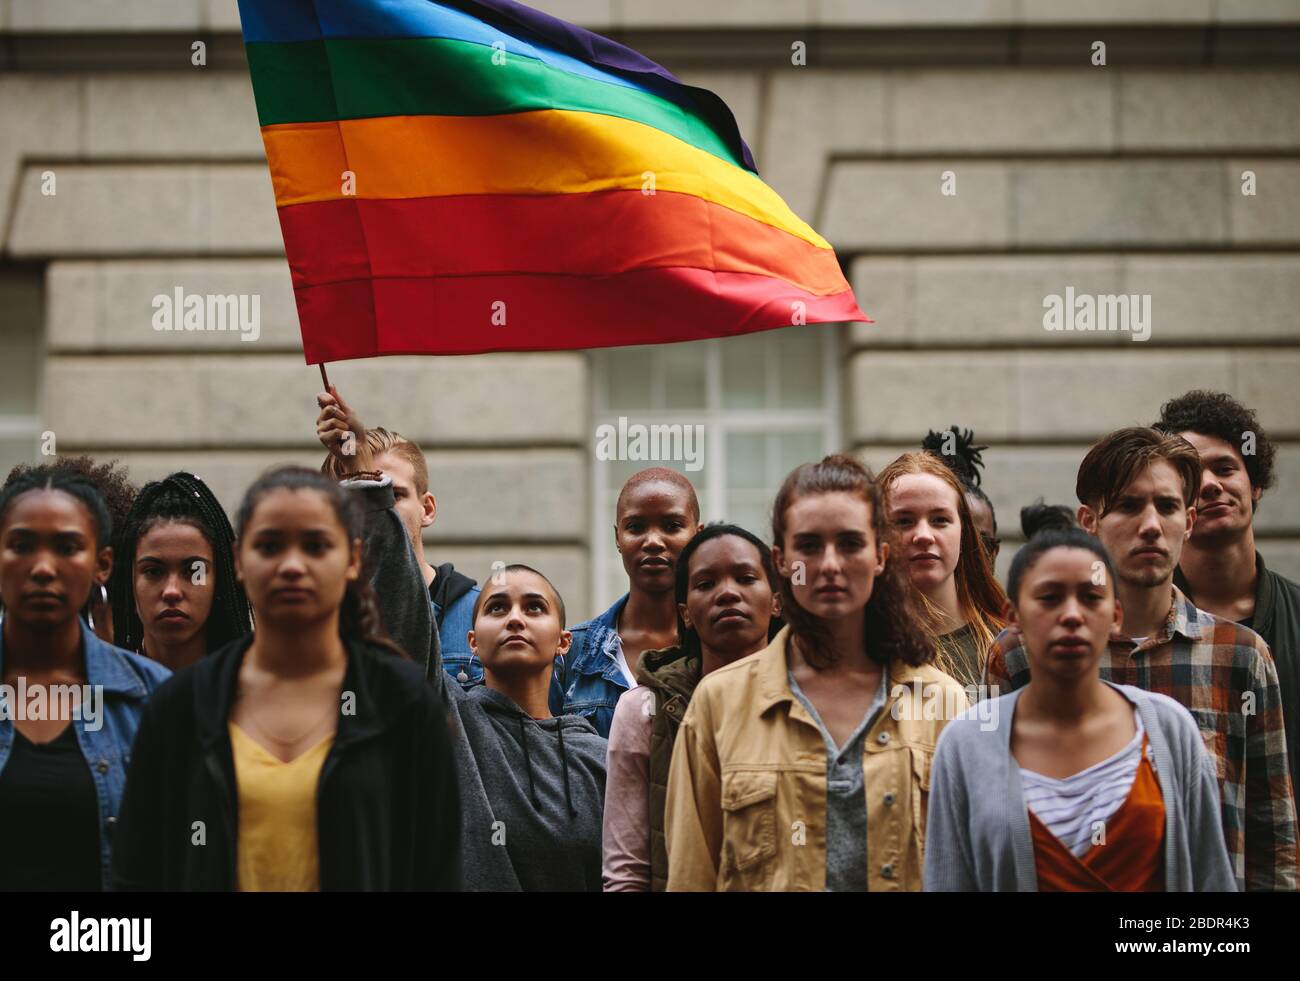 La gente participa en el desfile de orgullo. Gente multiétnica en la calle de la ciudad con una mujer que ondea la bandera del arco iris gay. Foto de stock